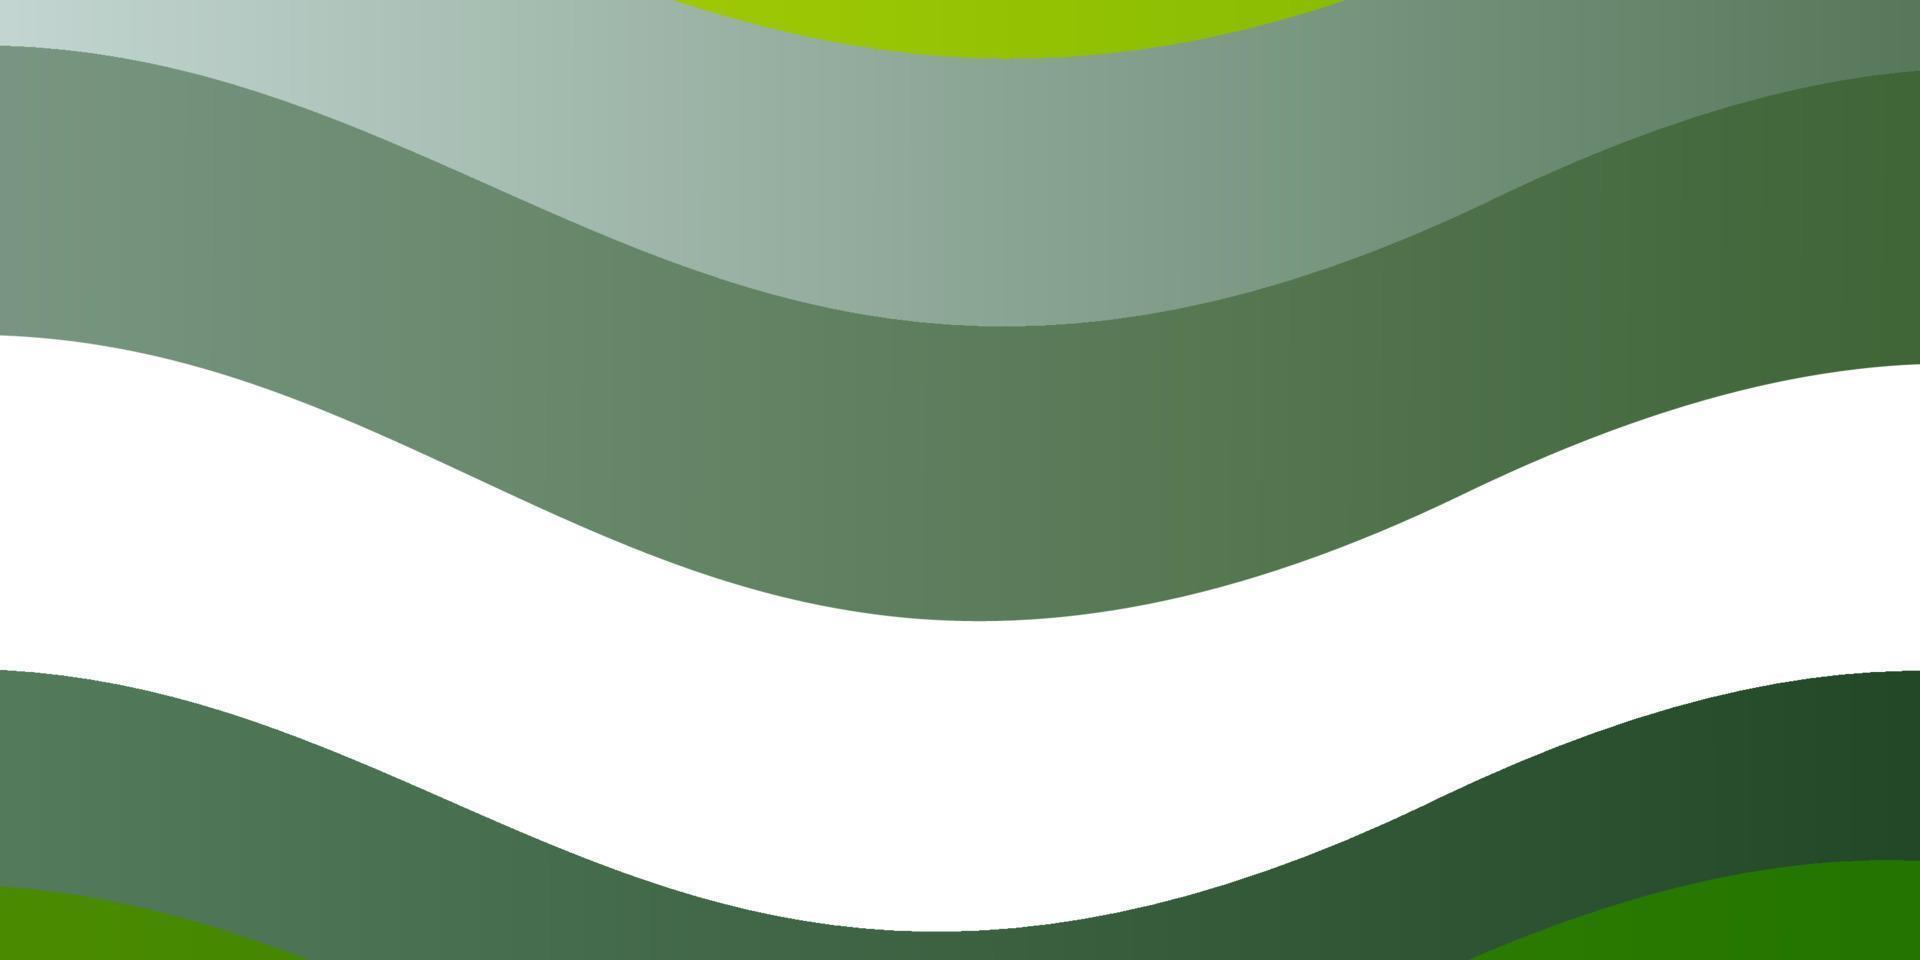 cenário de vetor verde e amarelo claro com arco circular.